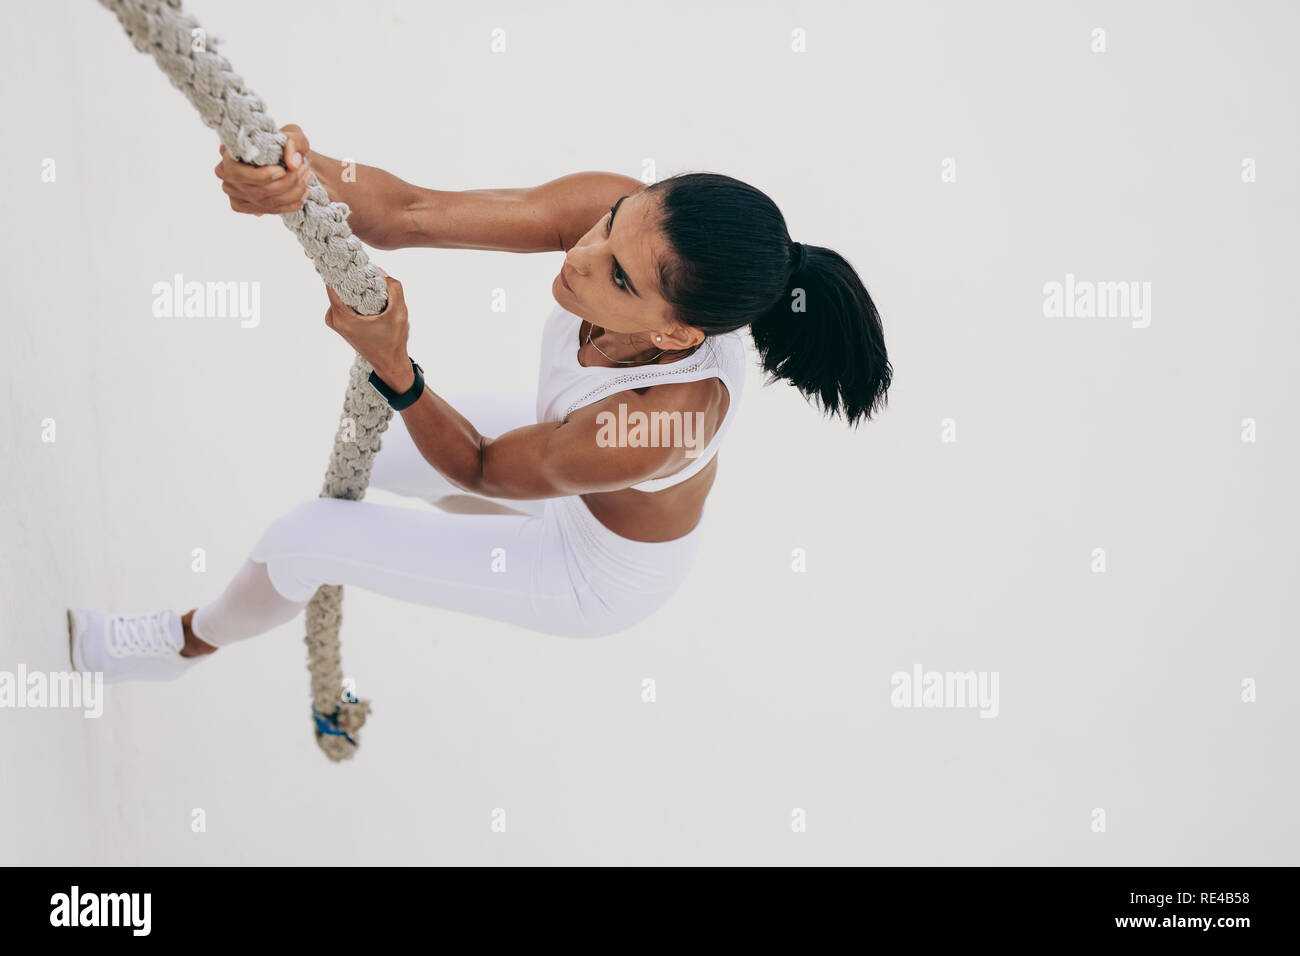 Ansicht von oben in eine athletische Frau klettern eine Wand mit einer Schlacht Seil. Frau tun Krafttraining klettern eine Wand mit einem Seil. Stockfoto